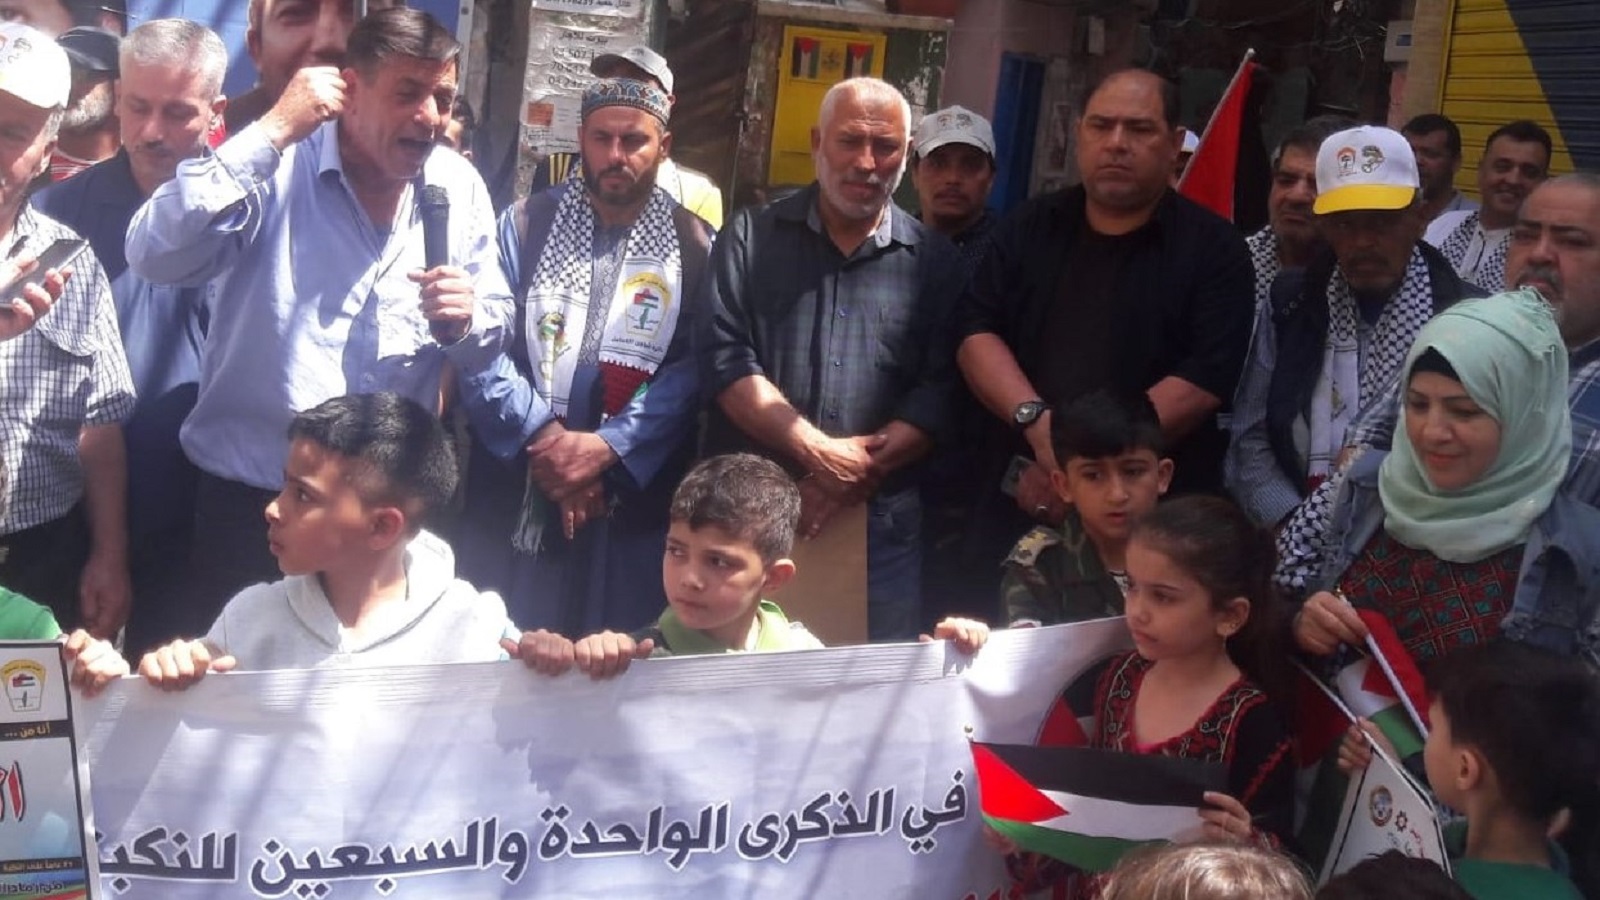 سقط اللاجئون حتى من خطابات القادة الفلسطينيين (المدن)